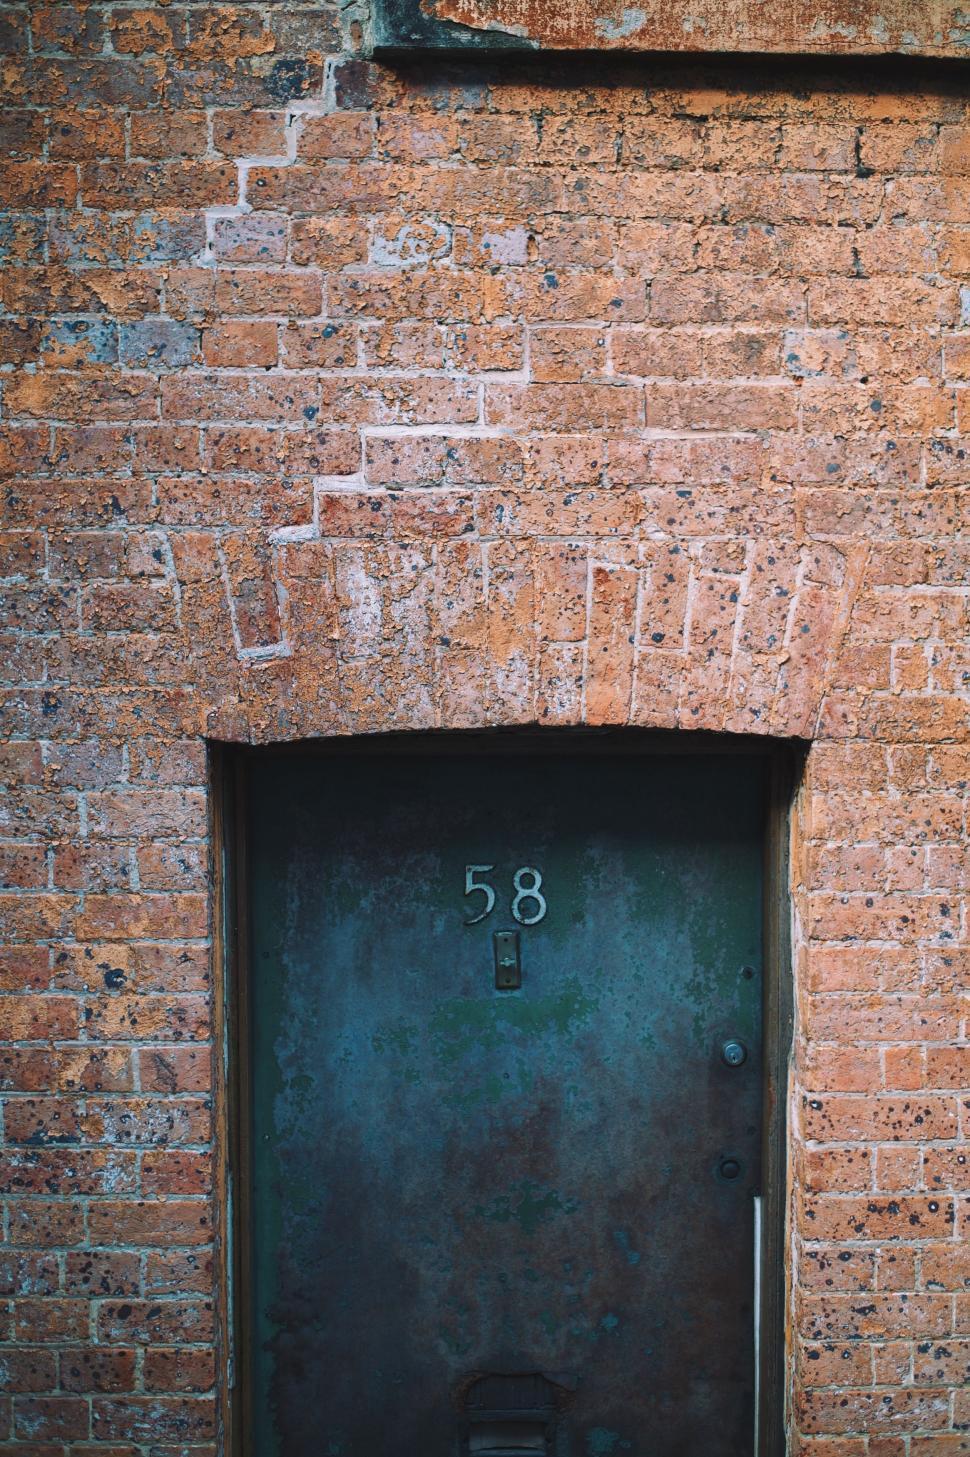 Free Image of Black Door in Brick Wall 